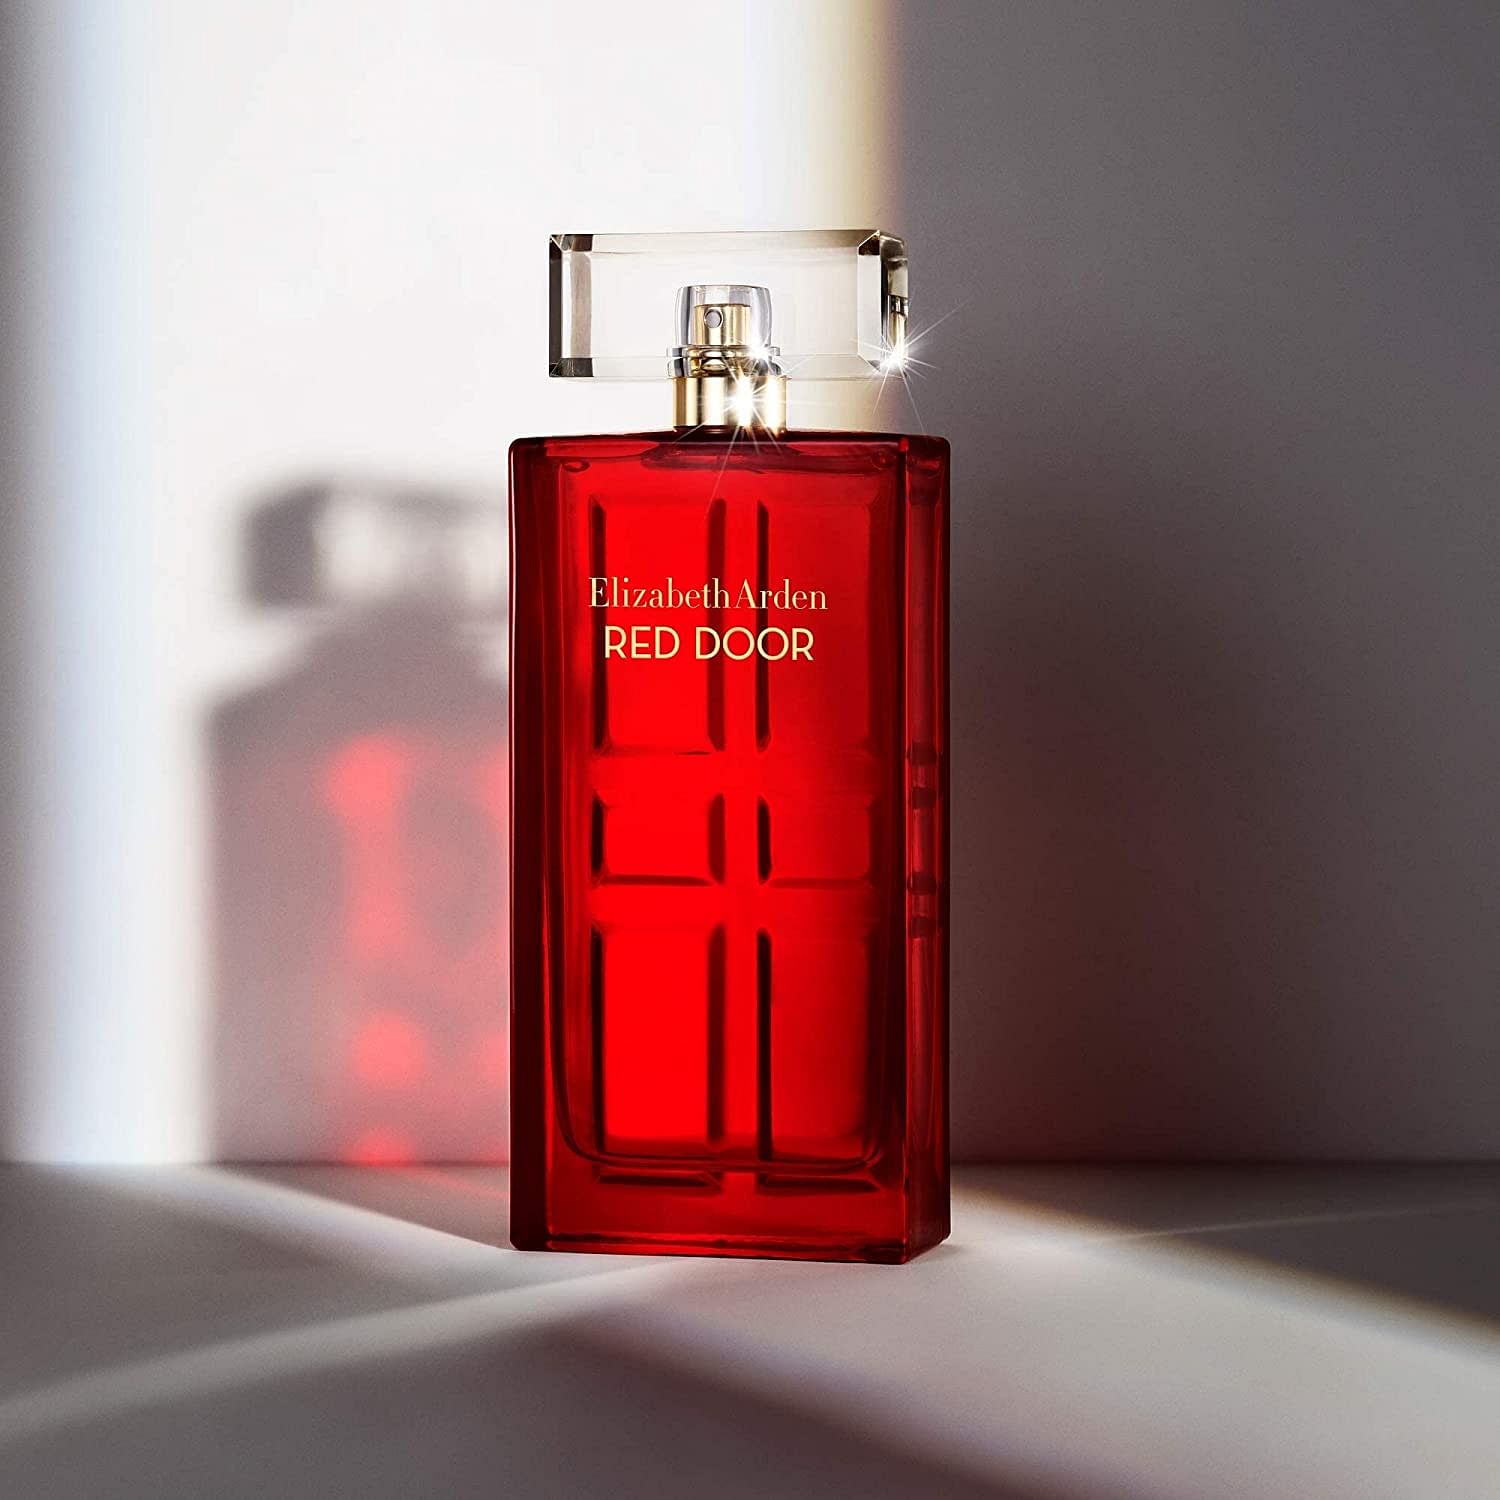 Elizabeth Arden Red Door EDT | My Perfume Shop Australia